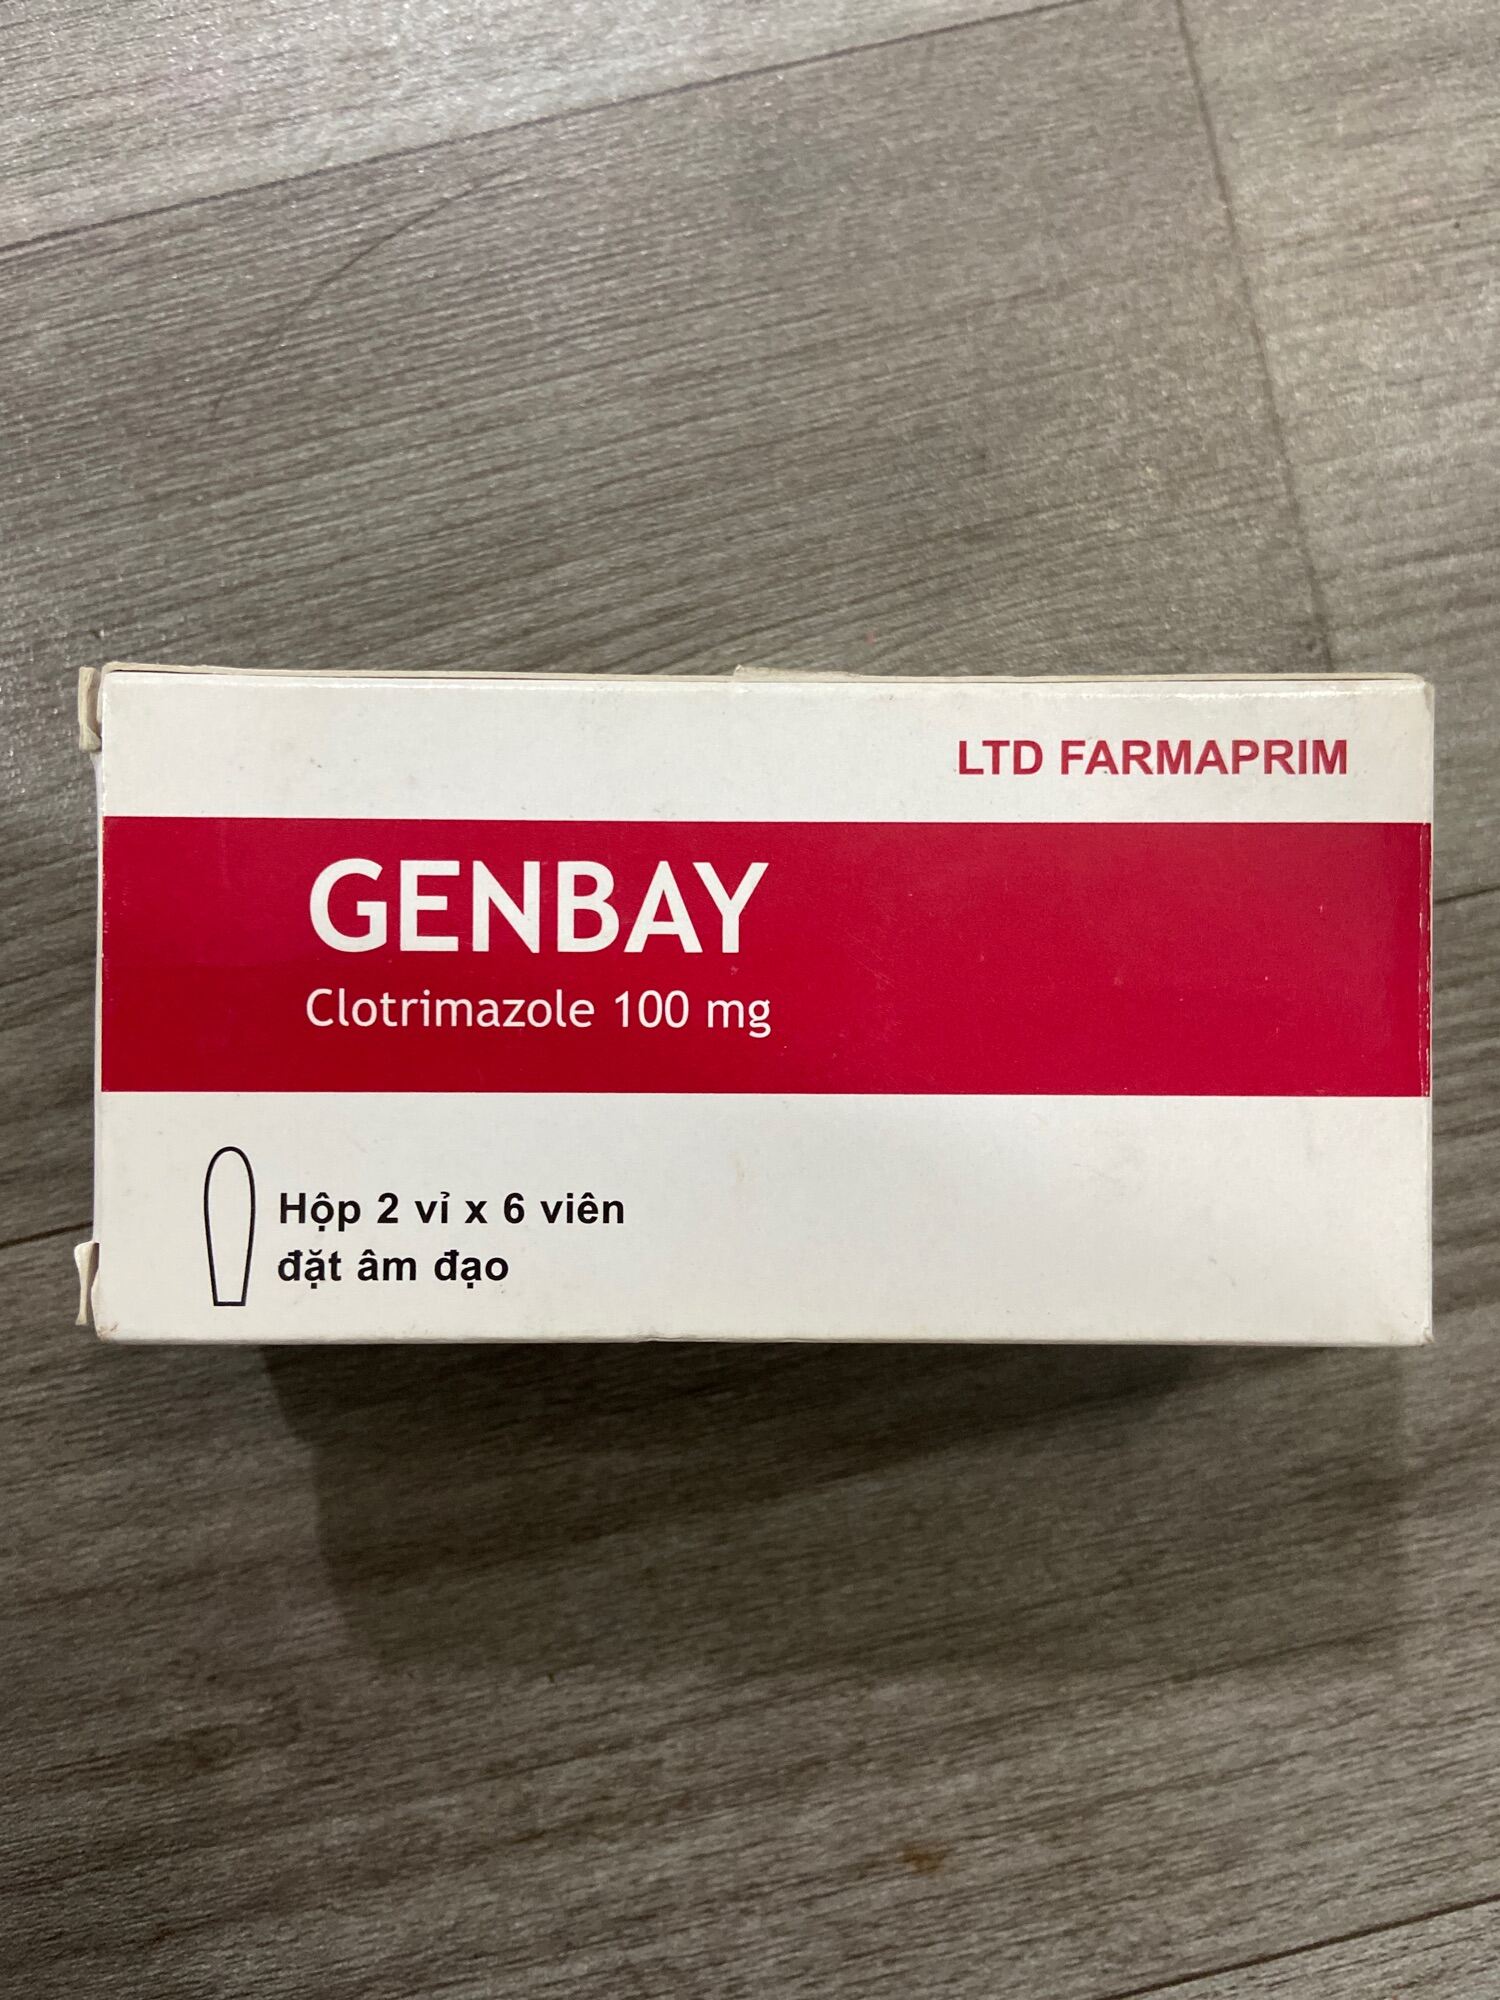 Viên đặt phụ khoa GENBAY hộp 12 viên nang mềm Đức Nghiệp Pharmacy